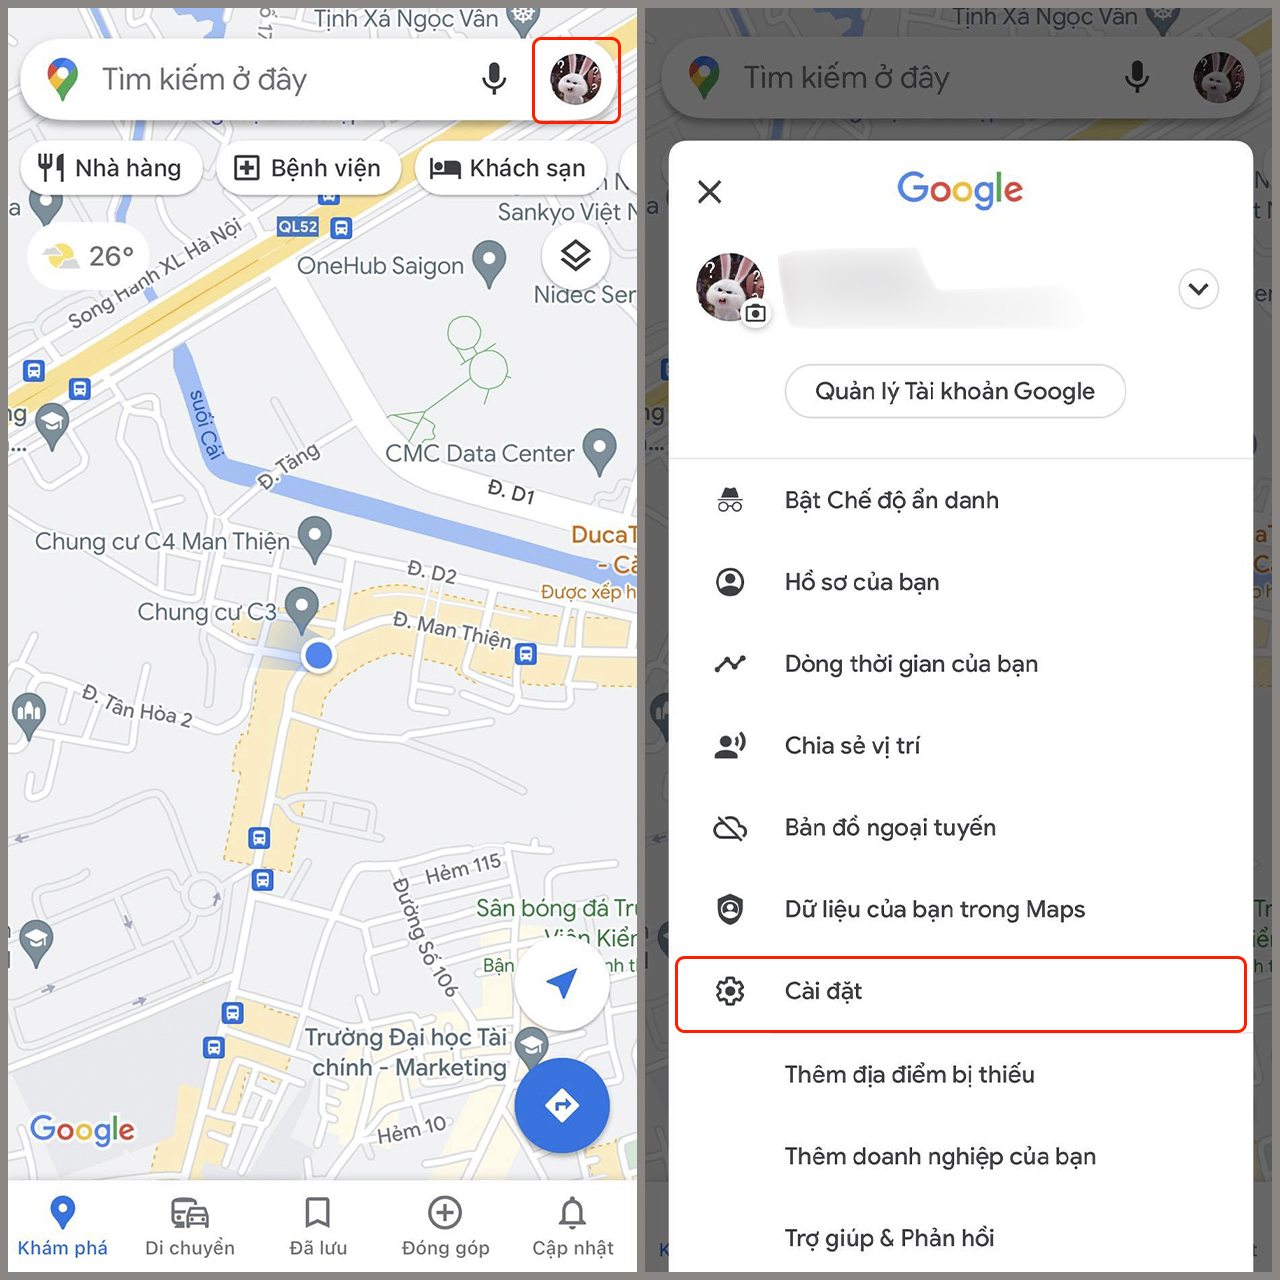 Tìm đường trên Google Maps trên iPhone: Không còn lạ lẫm gì khi cần tìm đường đến một địa điểm xa lạ với Google Maps trên iPhone. Điều đặc biệt ở năm 2024 là bạn có thể trải nghiệm nó một cách nhanh chóng và dễ dàng hơn bao giờ hết. Chỉ cần chạm vài lần vào màn hình của bạn, bạn sẽ có ngay bản đồ đường đi chính xác đến mục tiêu.